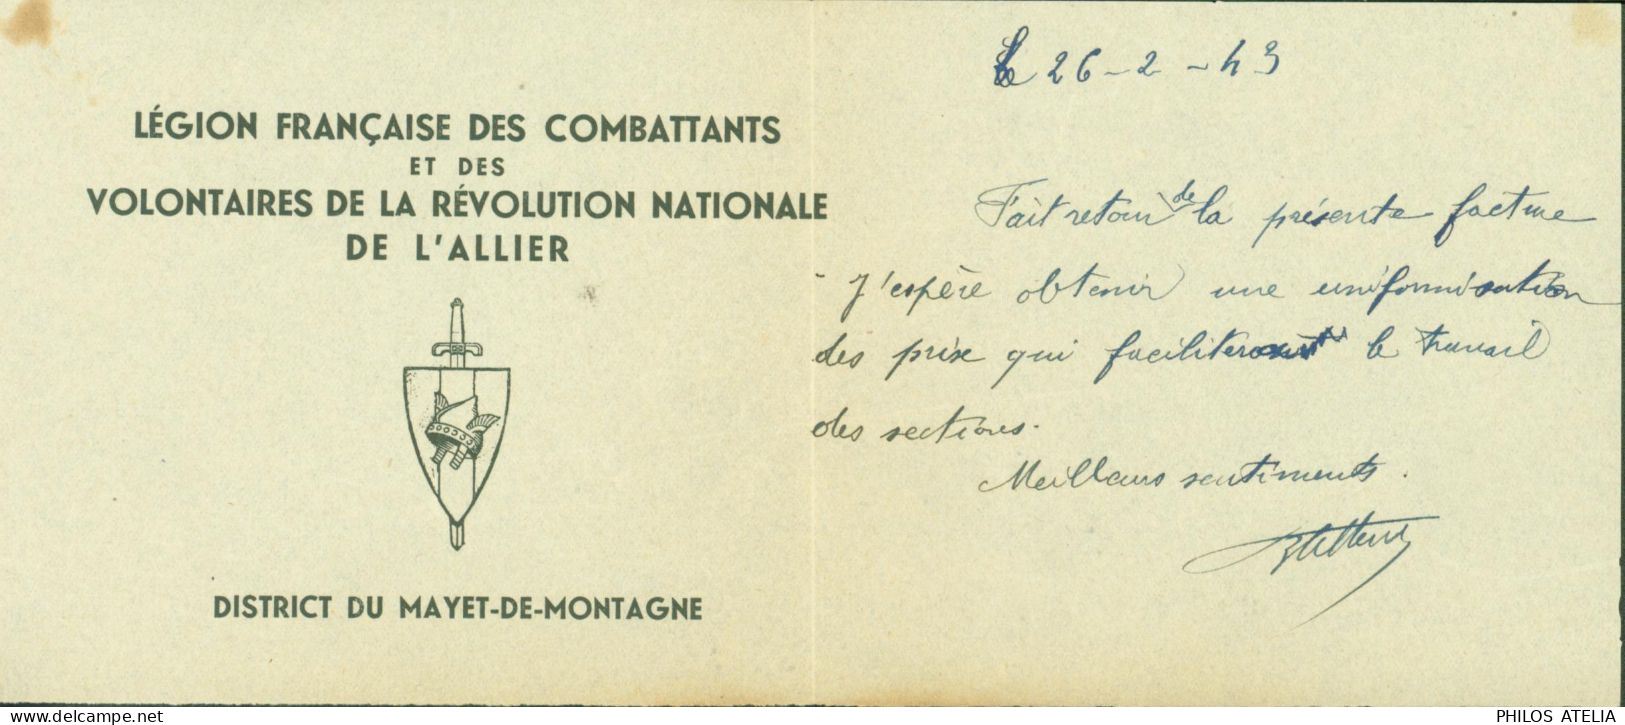 Guerre 40 26 2 43 Légion Française Des Combattants & Volontaires Révolution Nationale Allier District Mayet De Montagne - 2. Weltkrieg 1939-1945